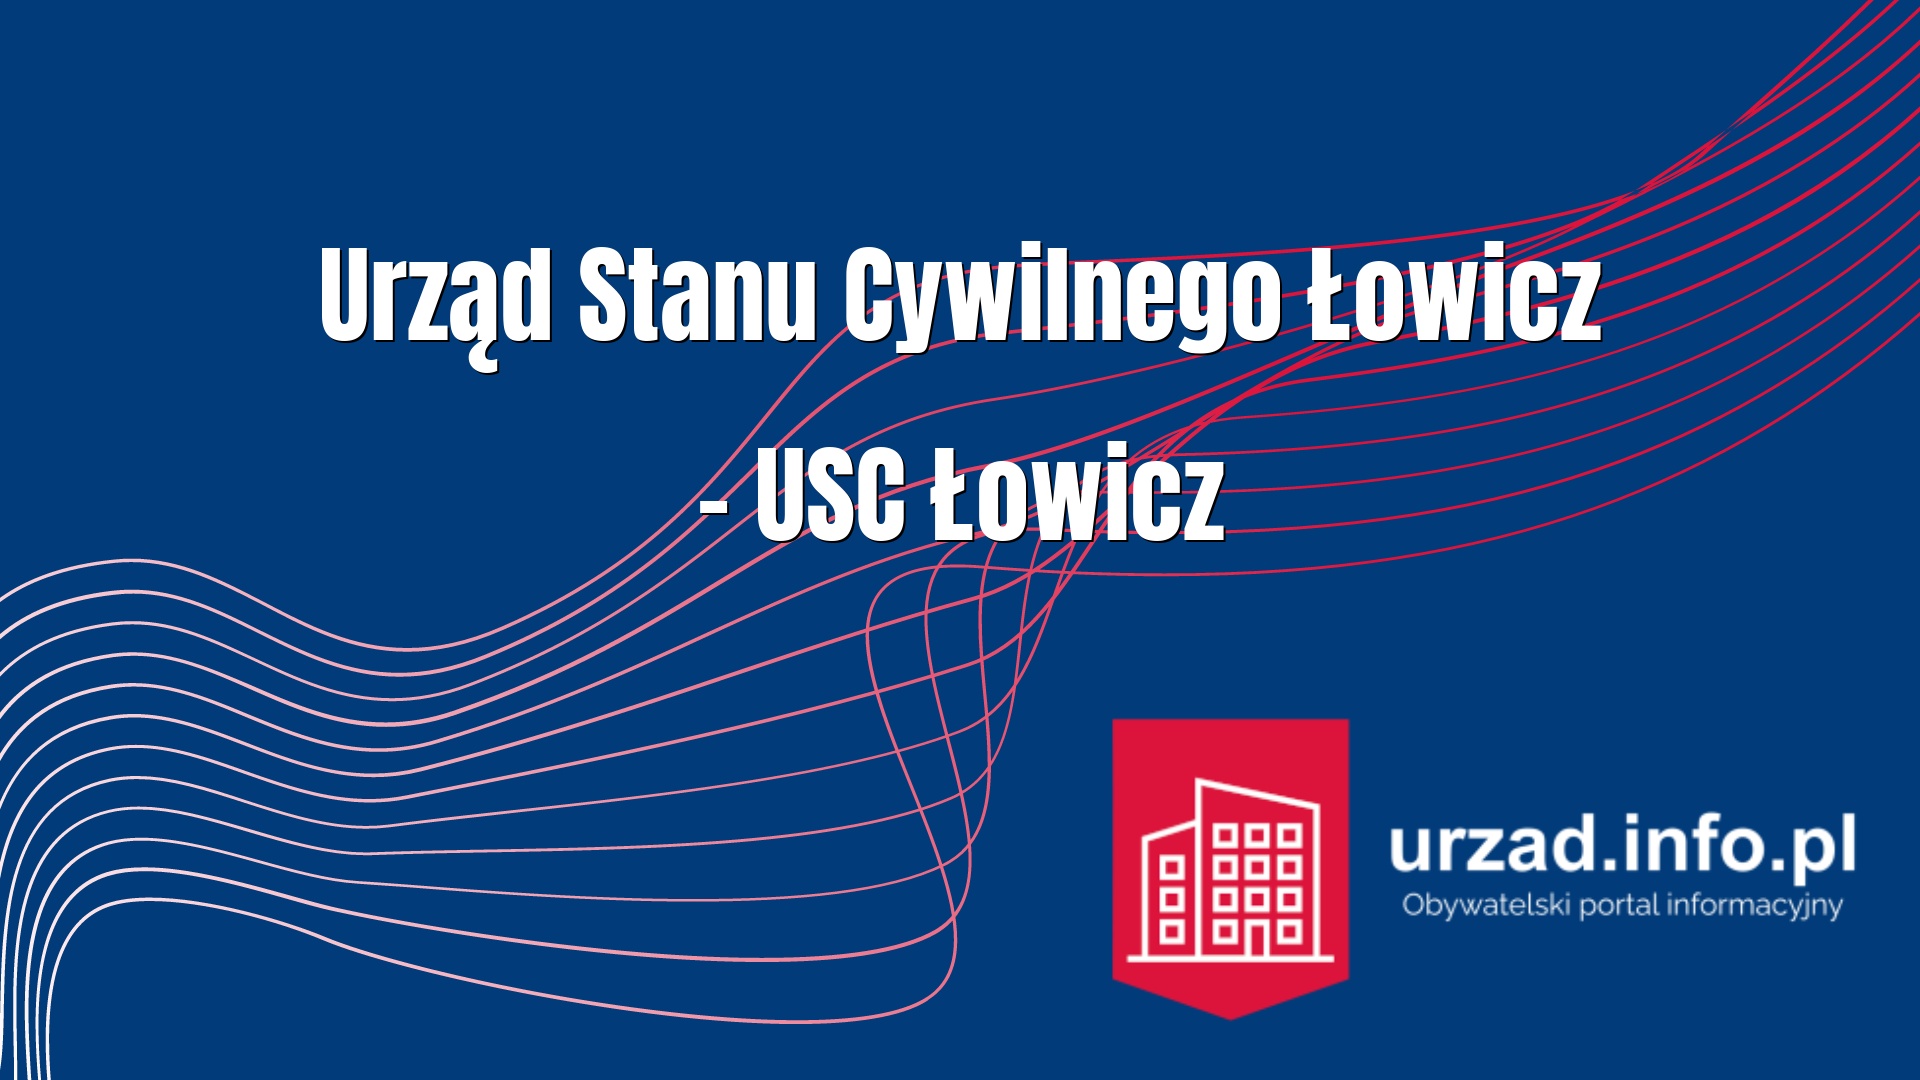 Urząd Stanu Cywilnego Łowicz – USC Łowicz